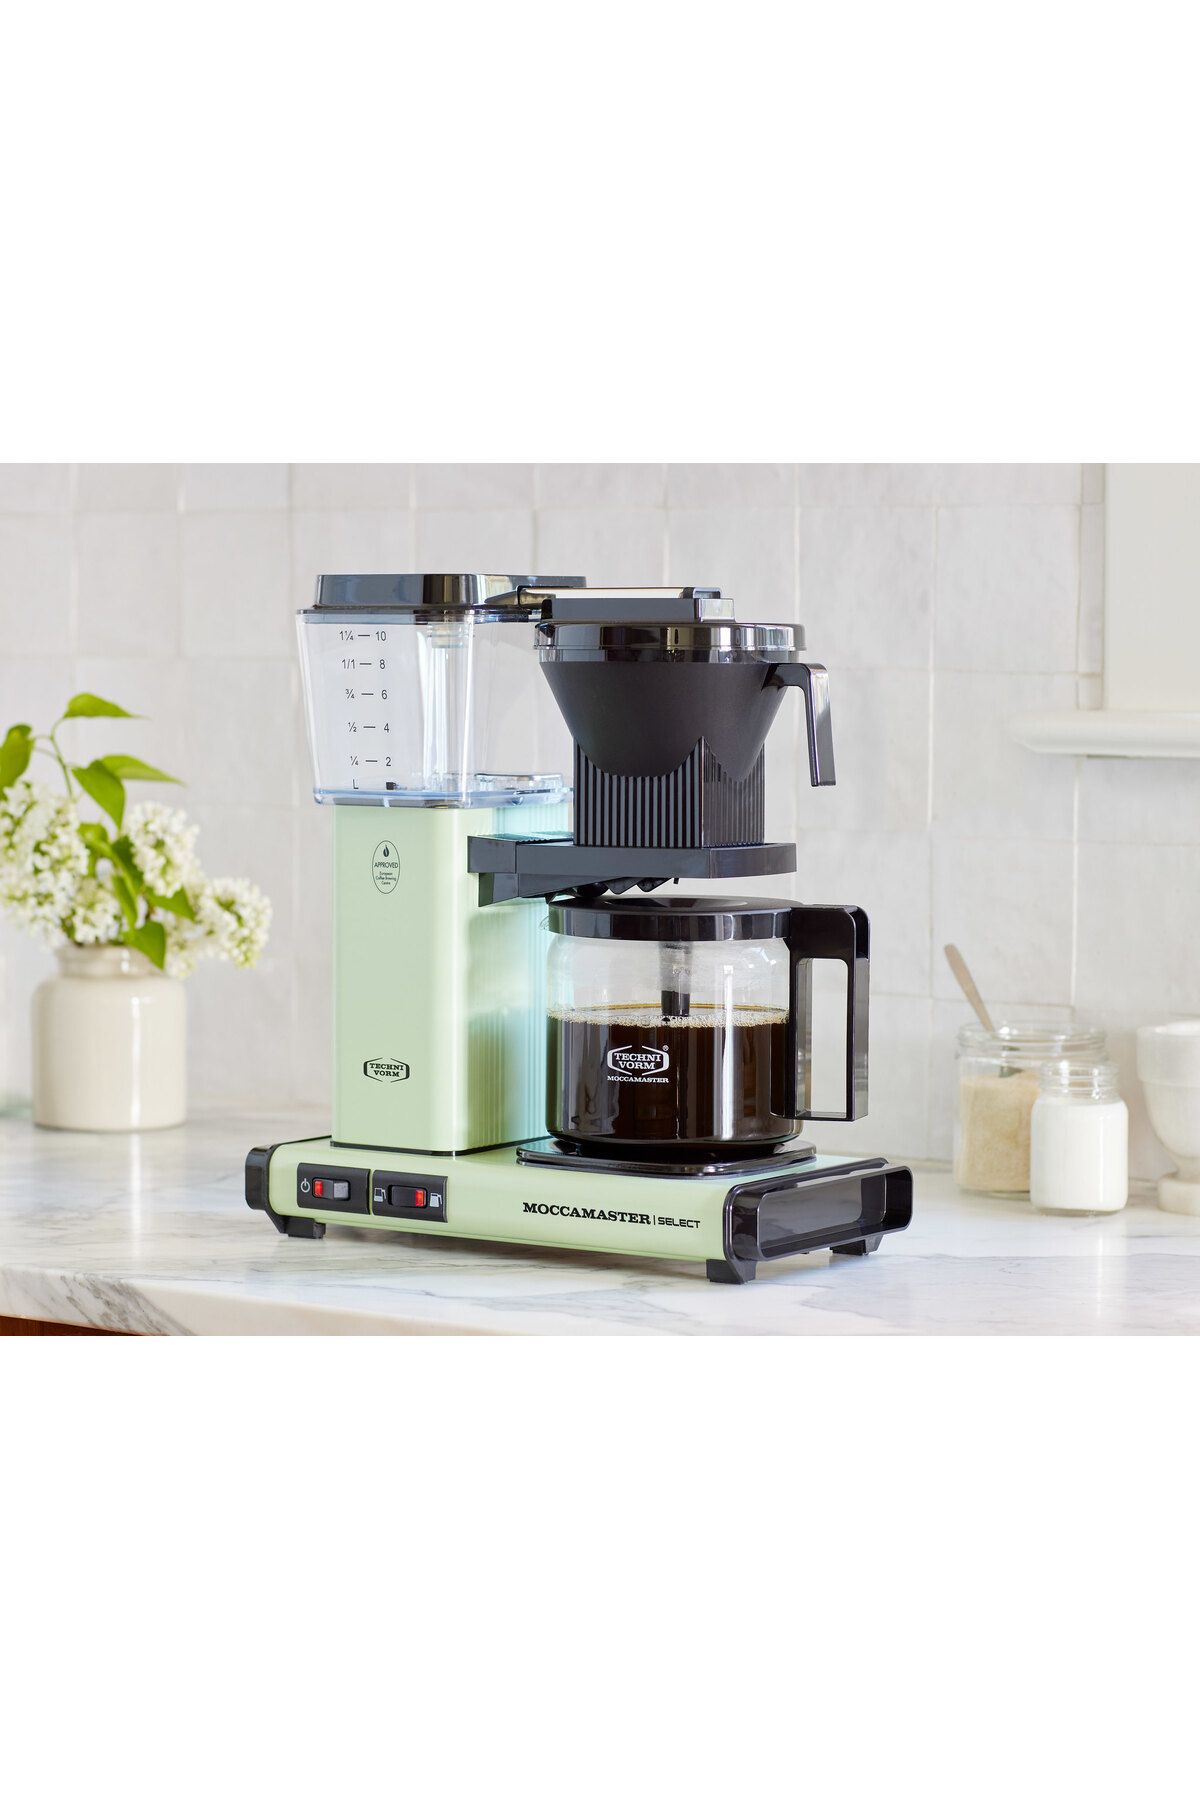 Moccamaster Kbg 741 Select Filtre Kahve Makinası (PASTEL GREEN)